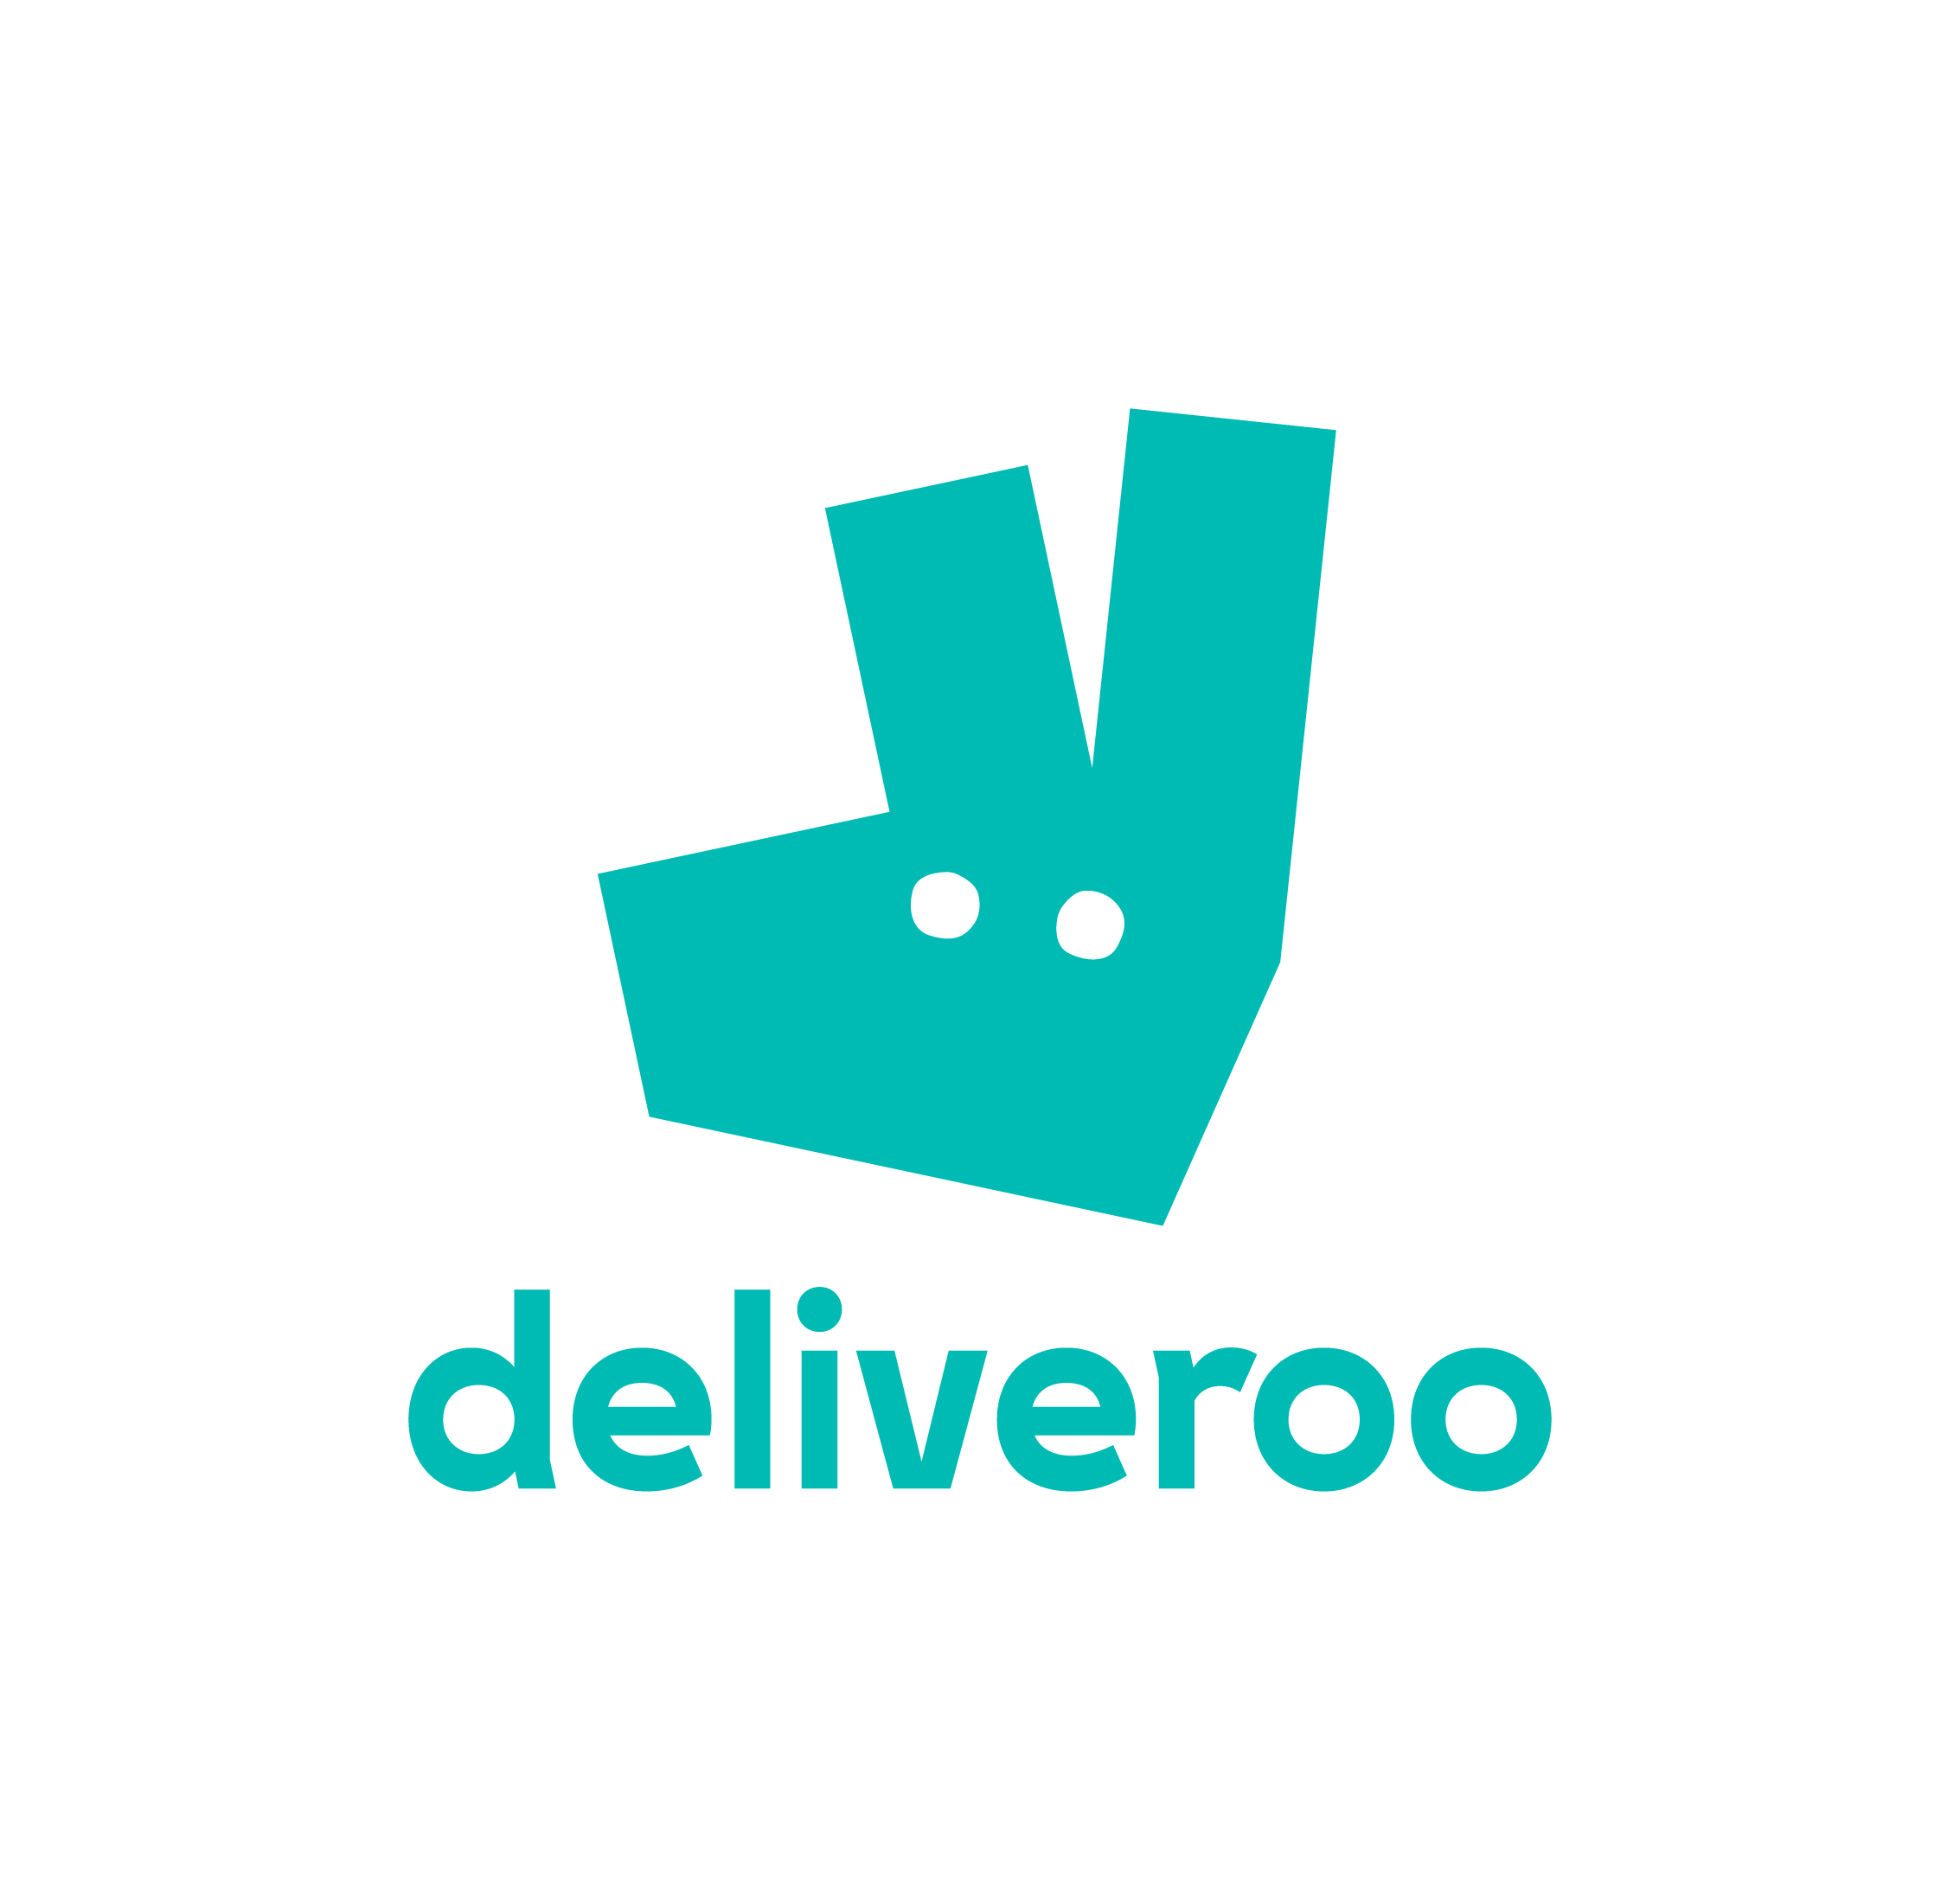 deliveroo Logo